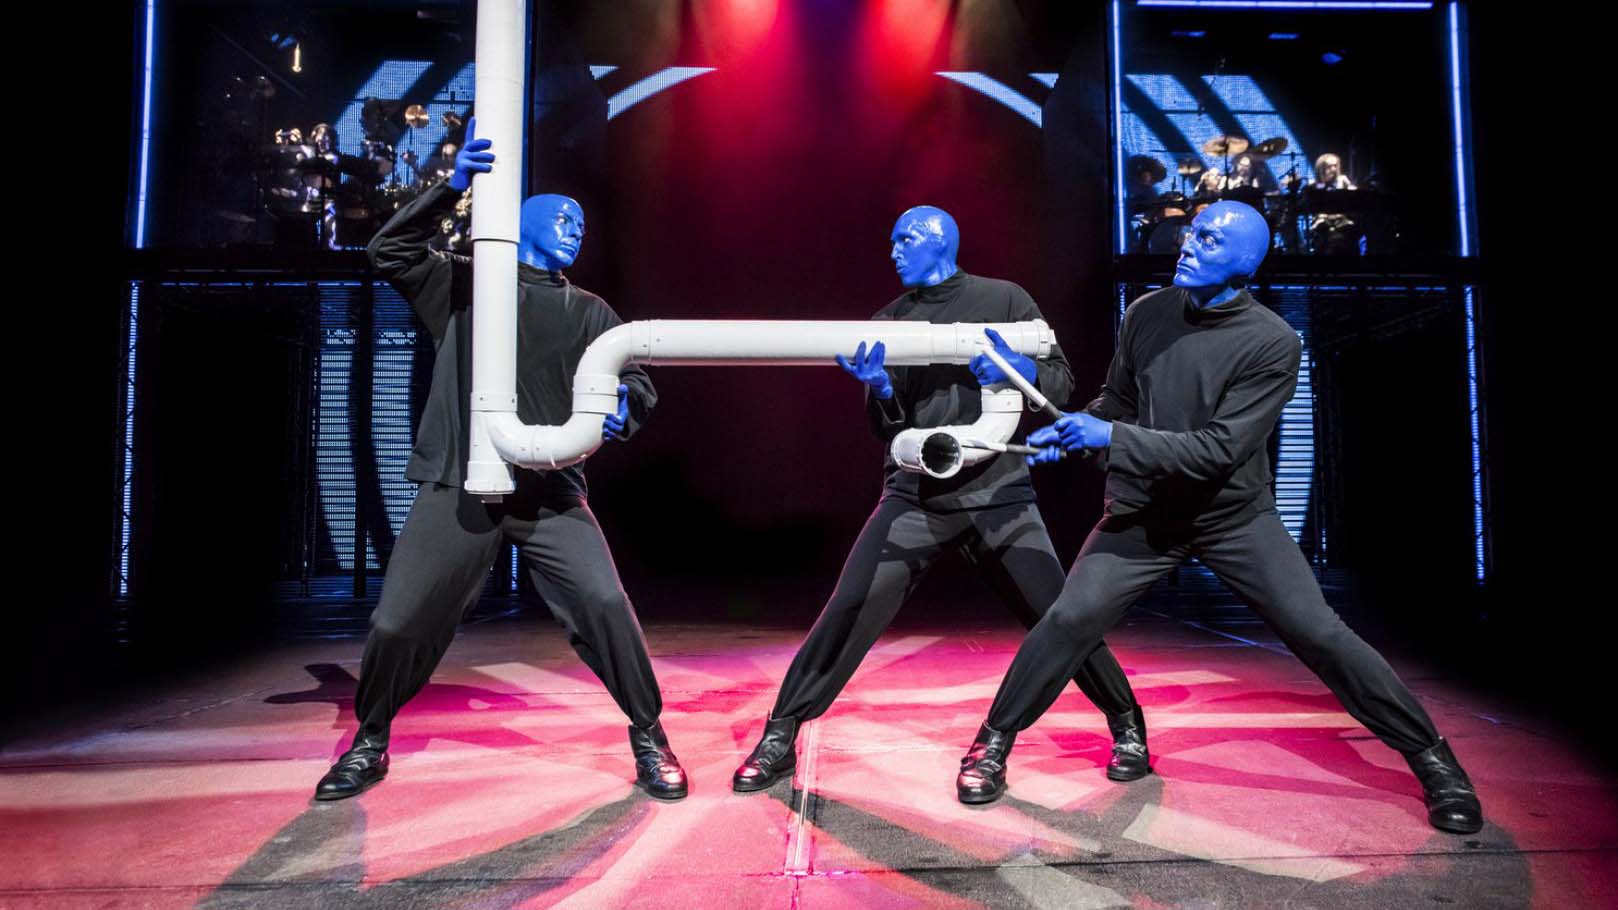 Los tres "hombres azules" expandirán su marca junto a la infraestructura del circo, que incrementa su presencia en países poco concurridos